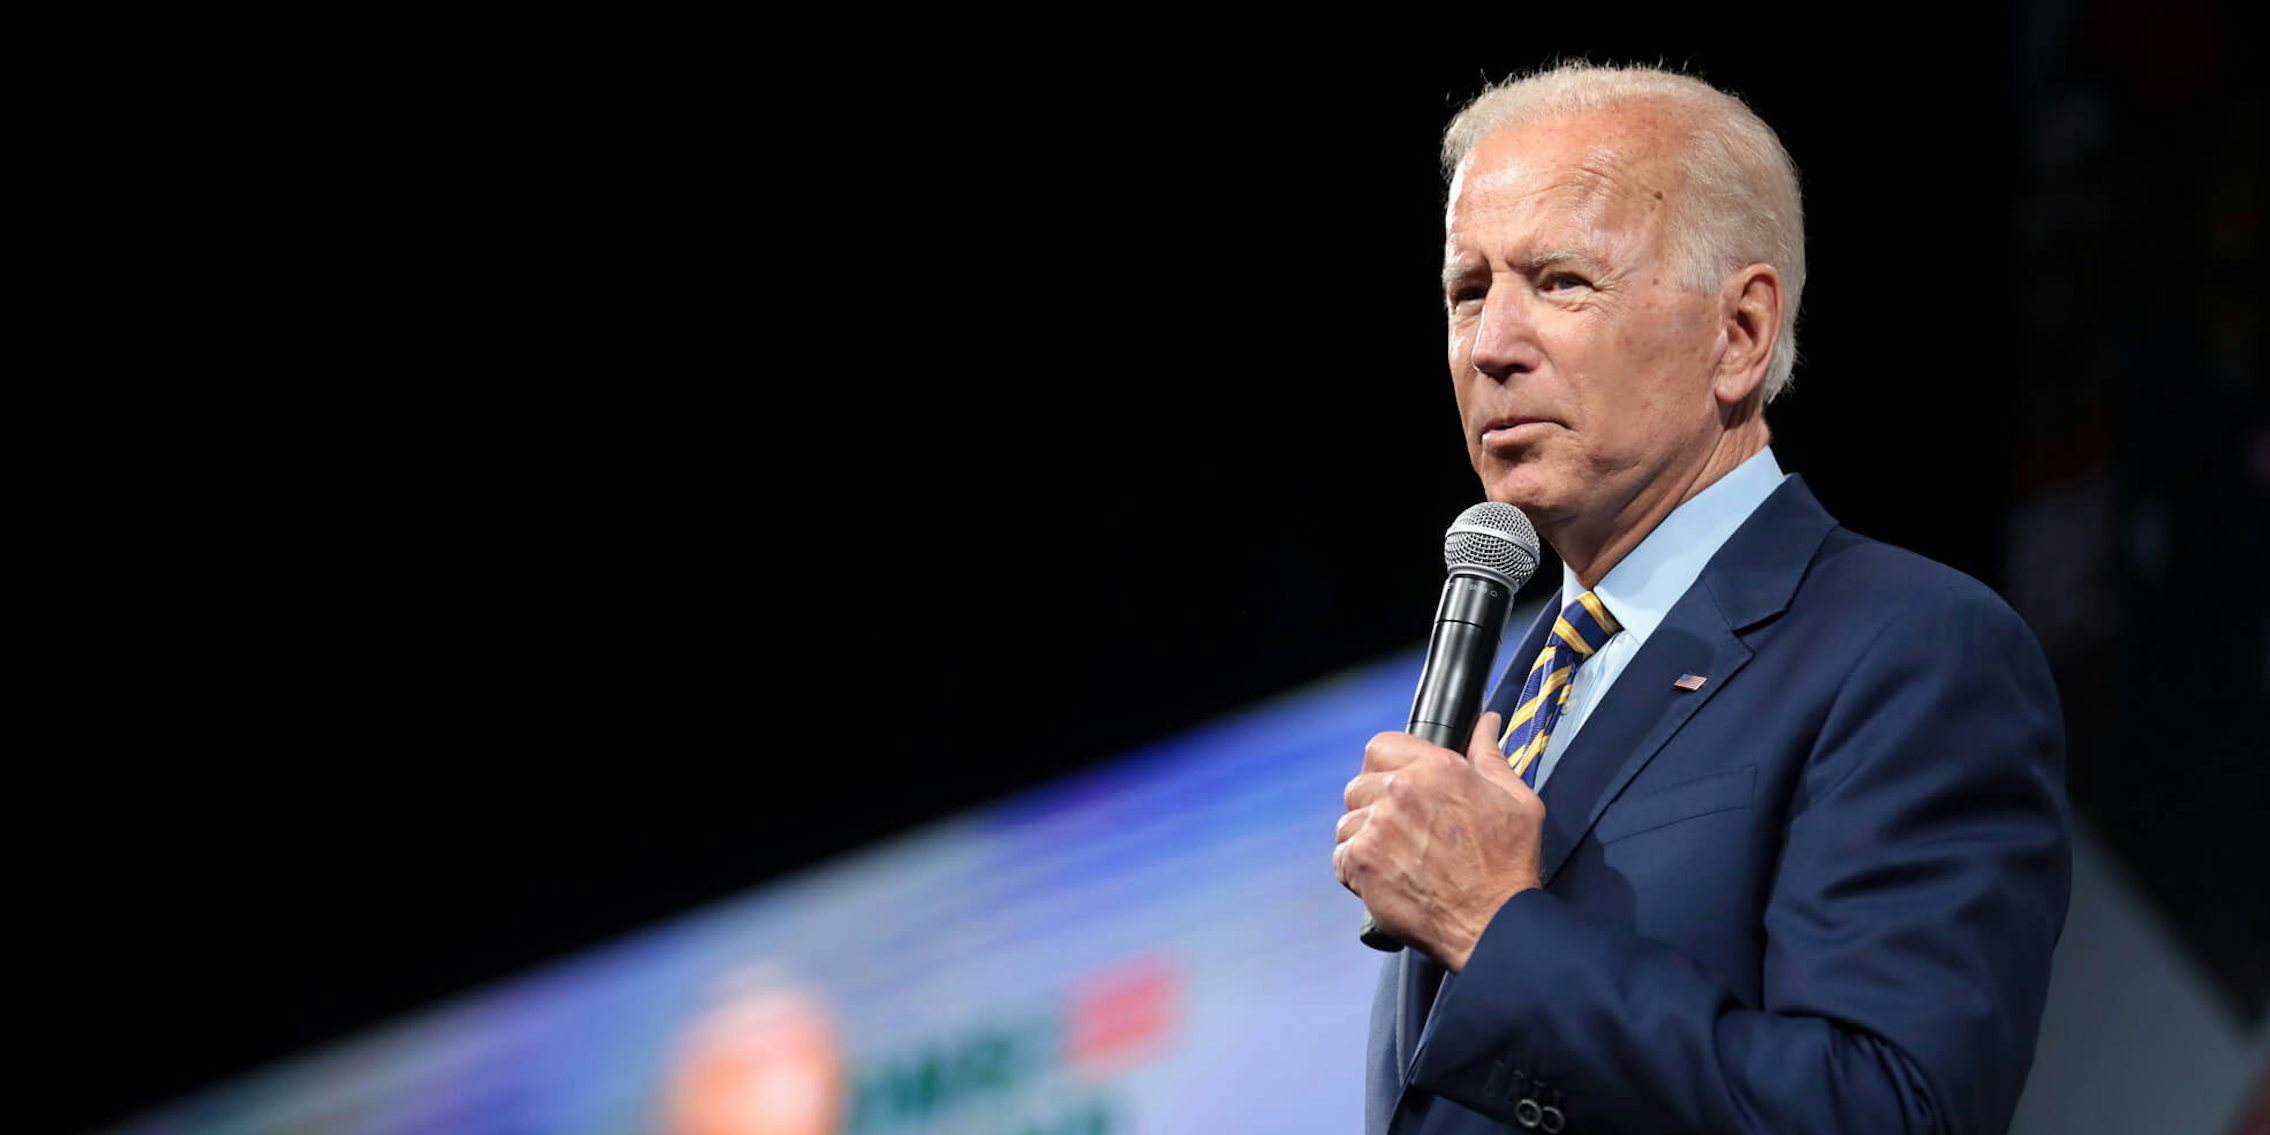 Joe Biden Denies Sexual Assault Allegations